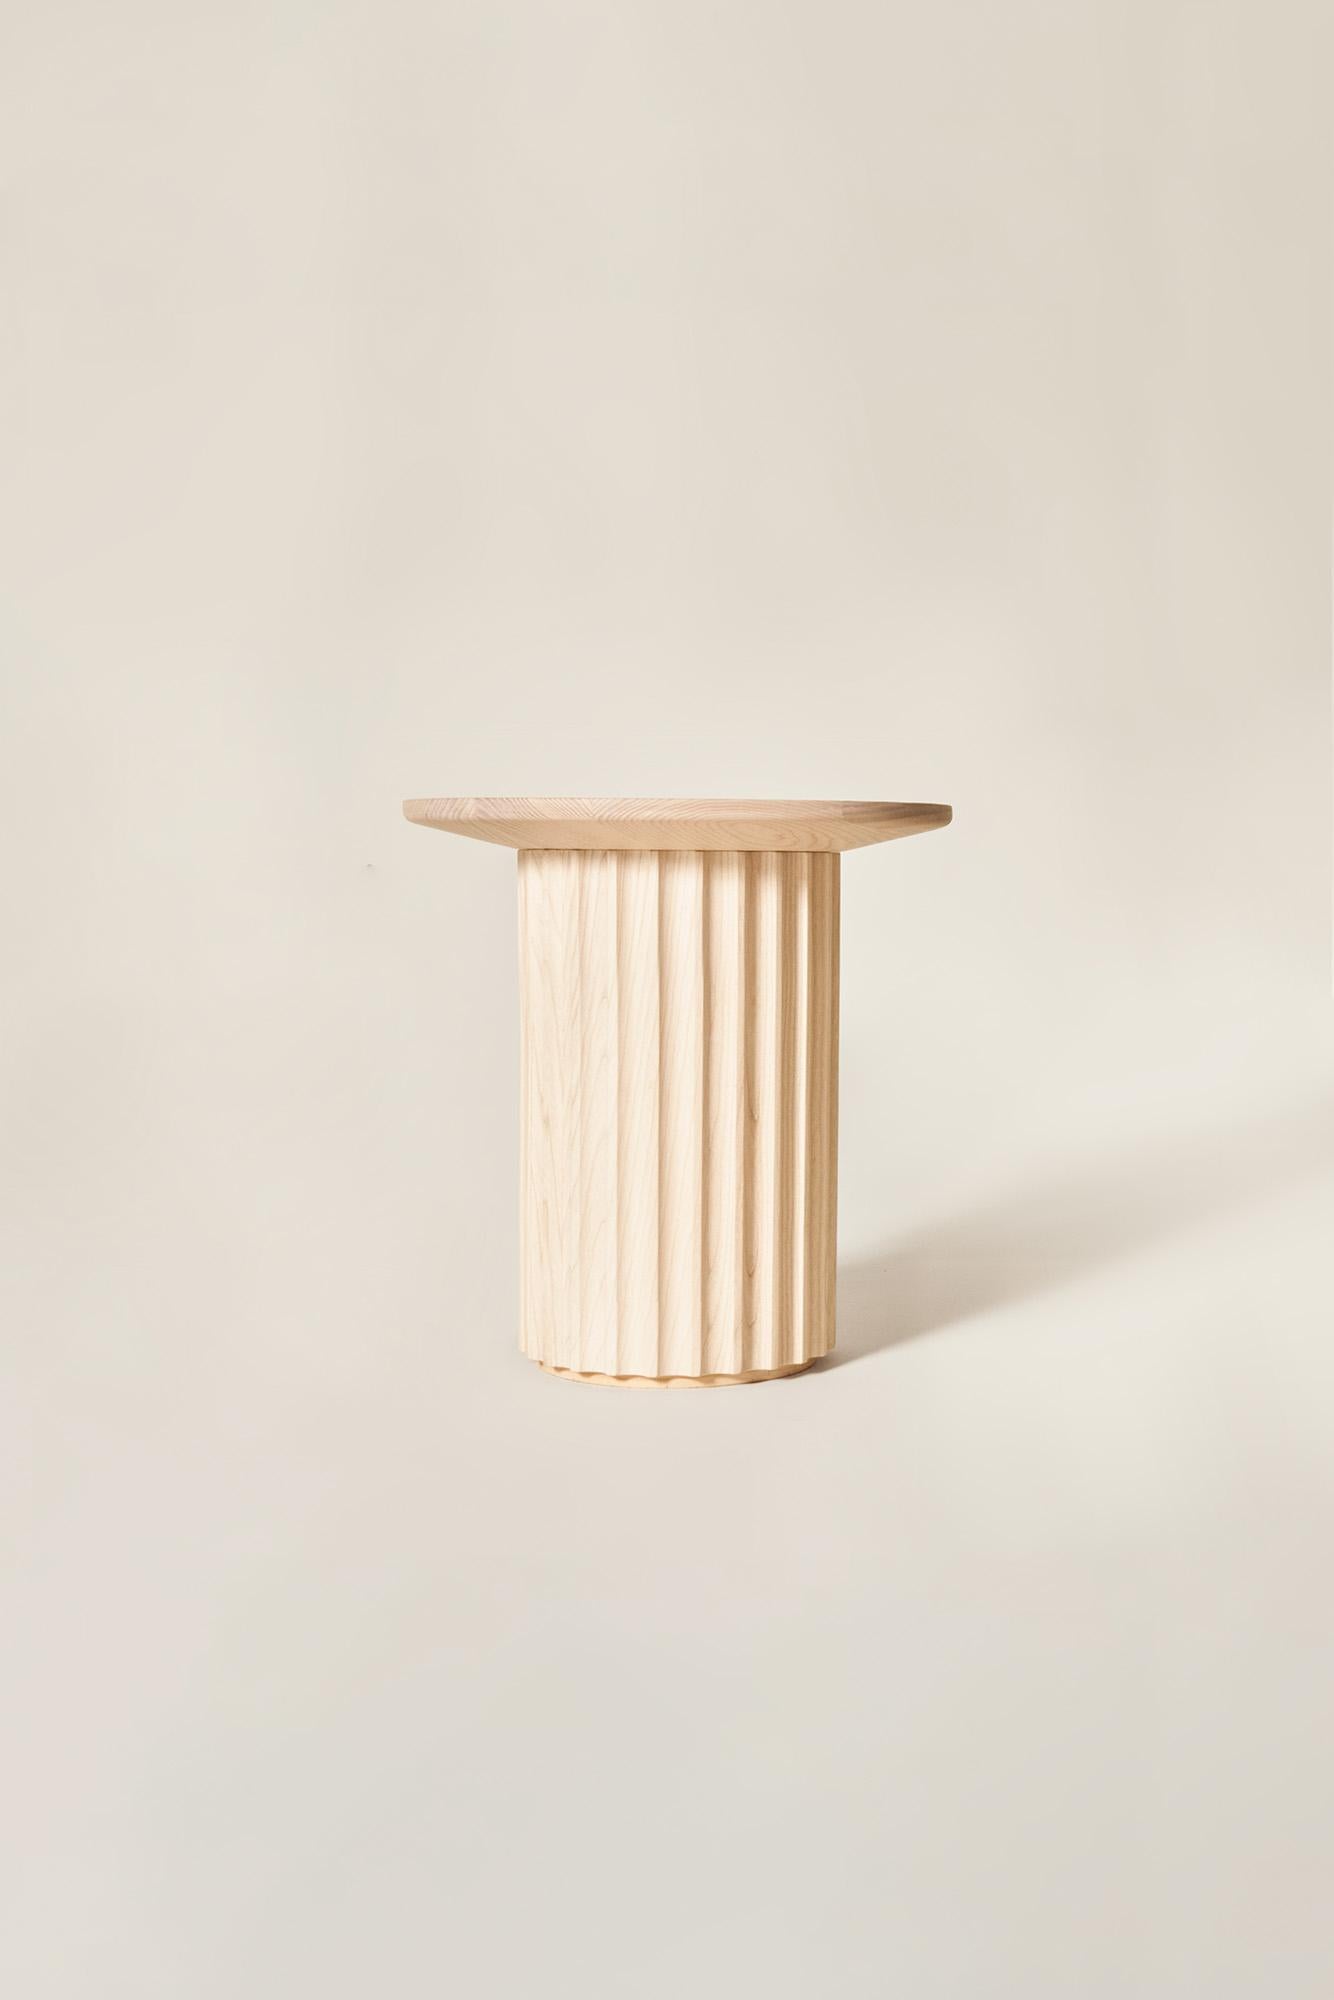 Huilé Table basse Capitello en bois massif, finition naturelle, contemporaine en vente